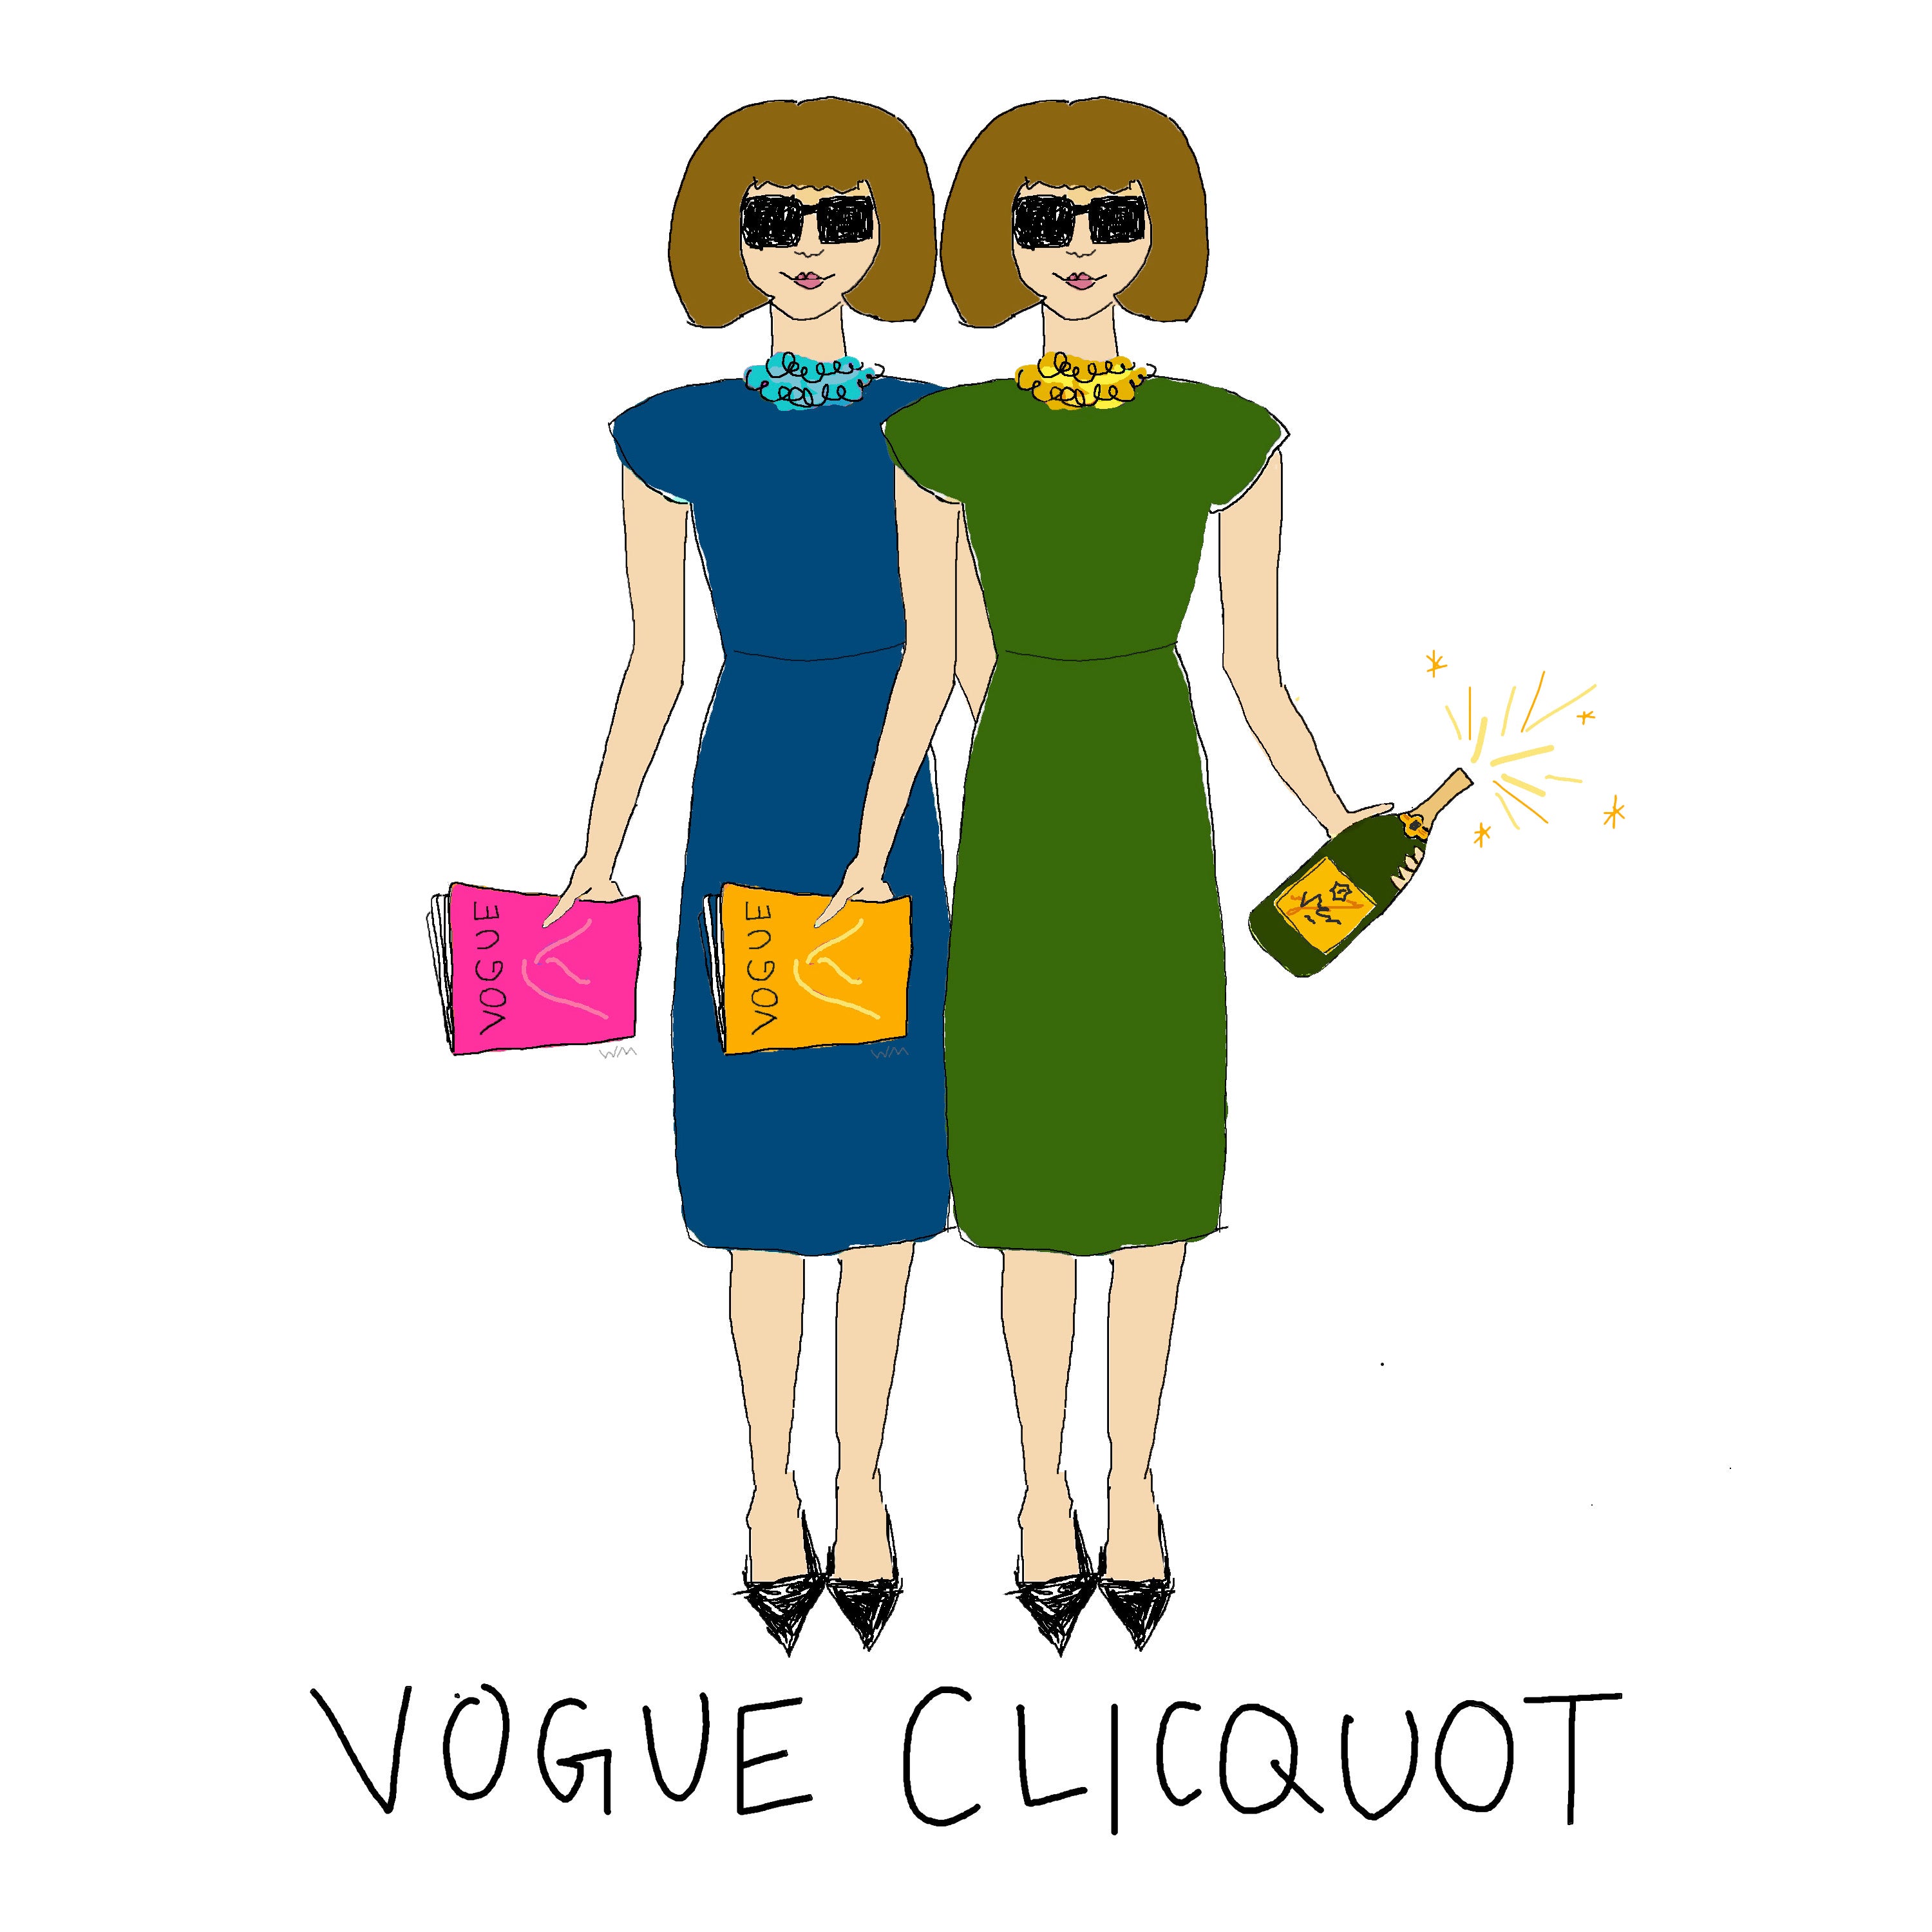 Uncork Vogue Clicquot